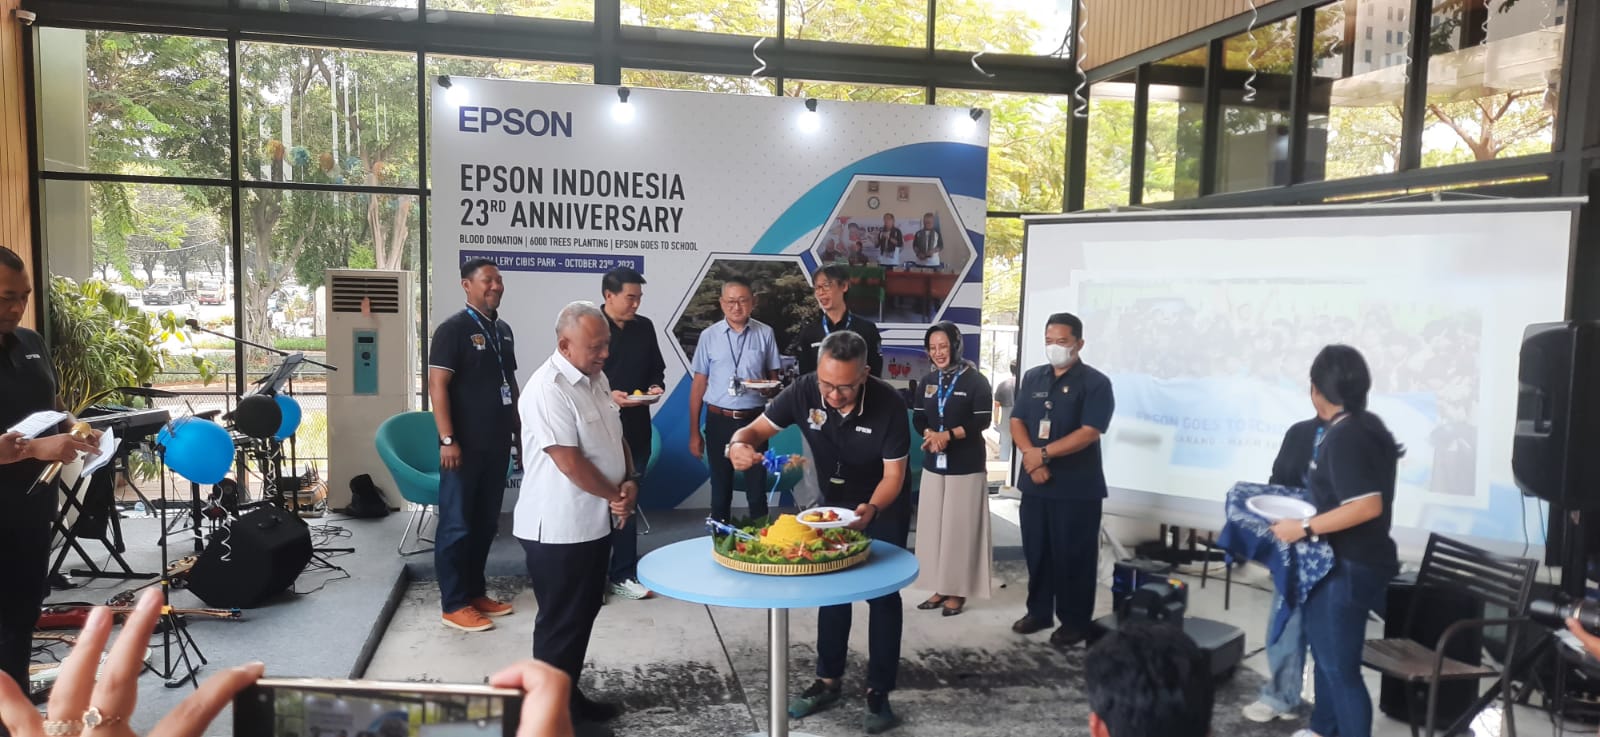 Peringati Hari Jadi ke-23, Epson Indonesia Gelar Kegiatan Penanaman Pohon